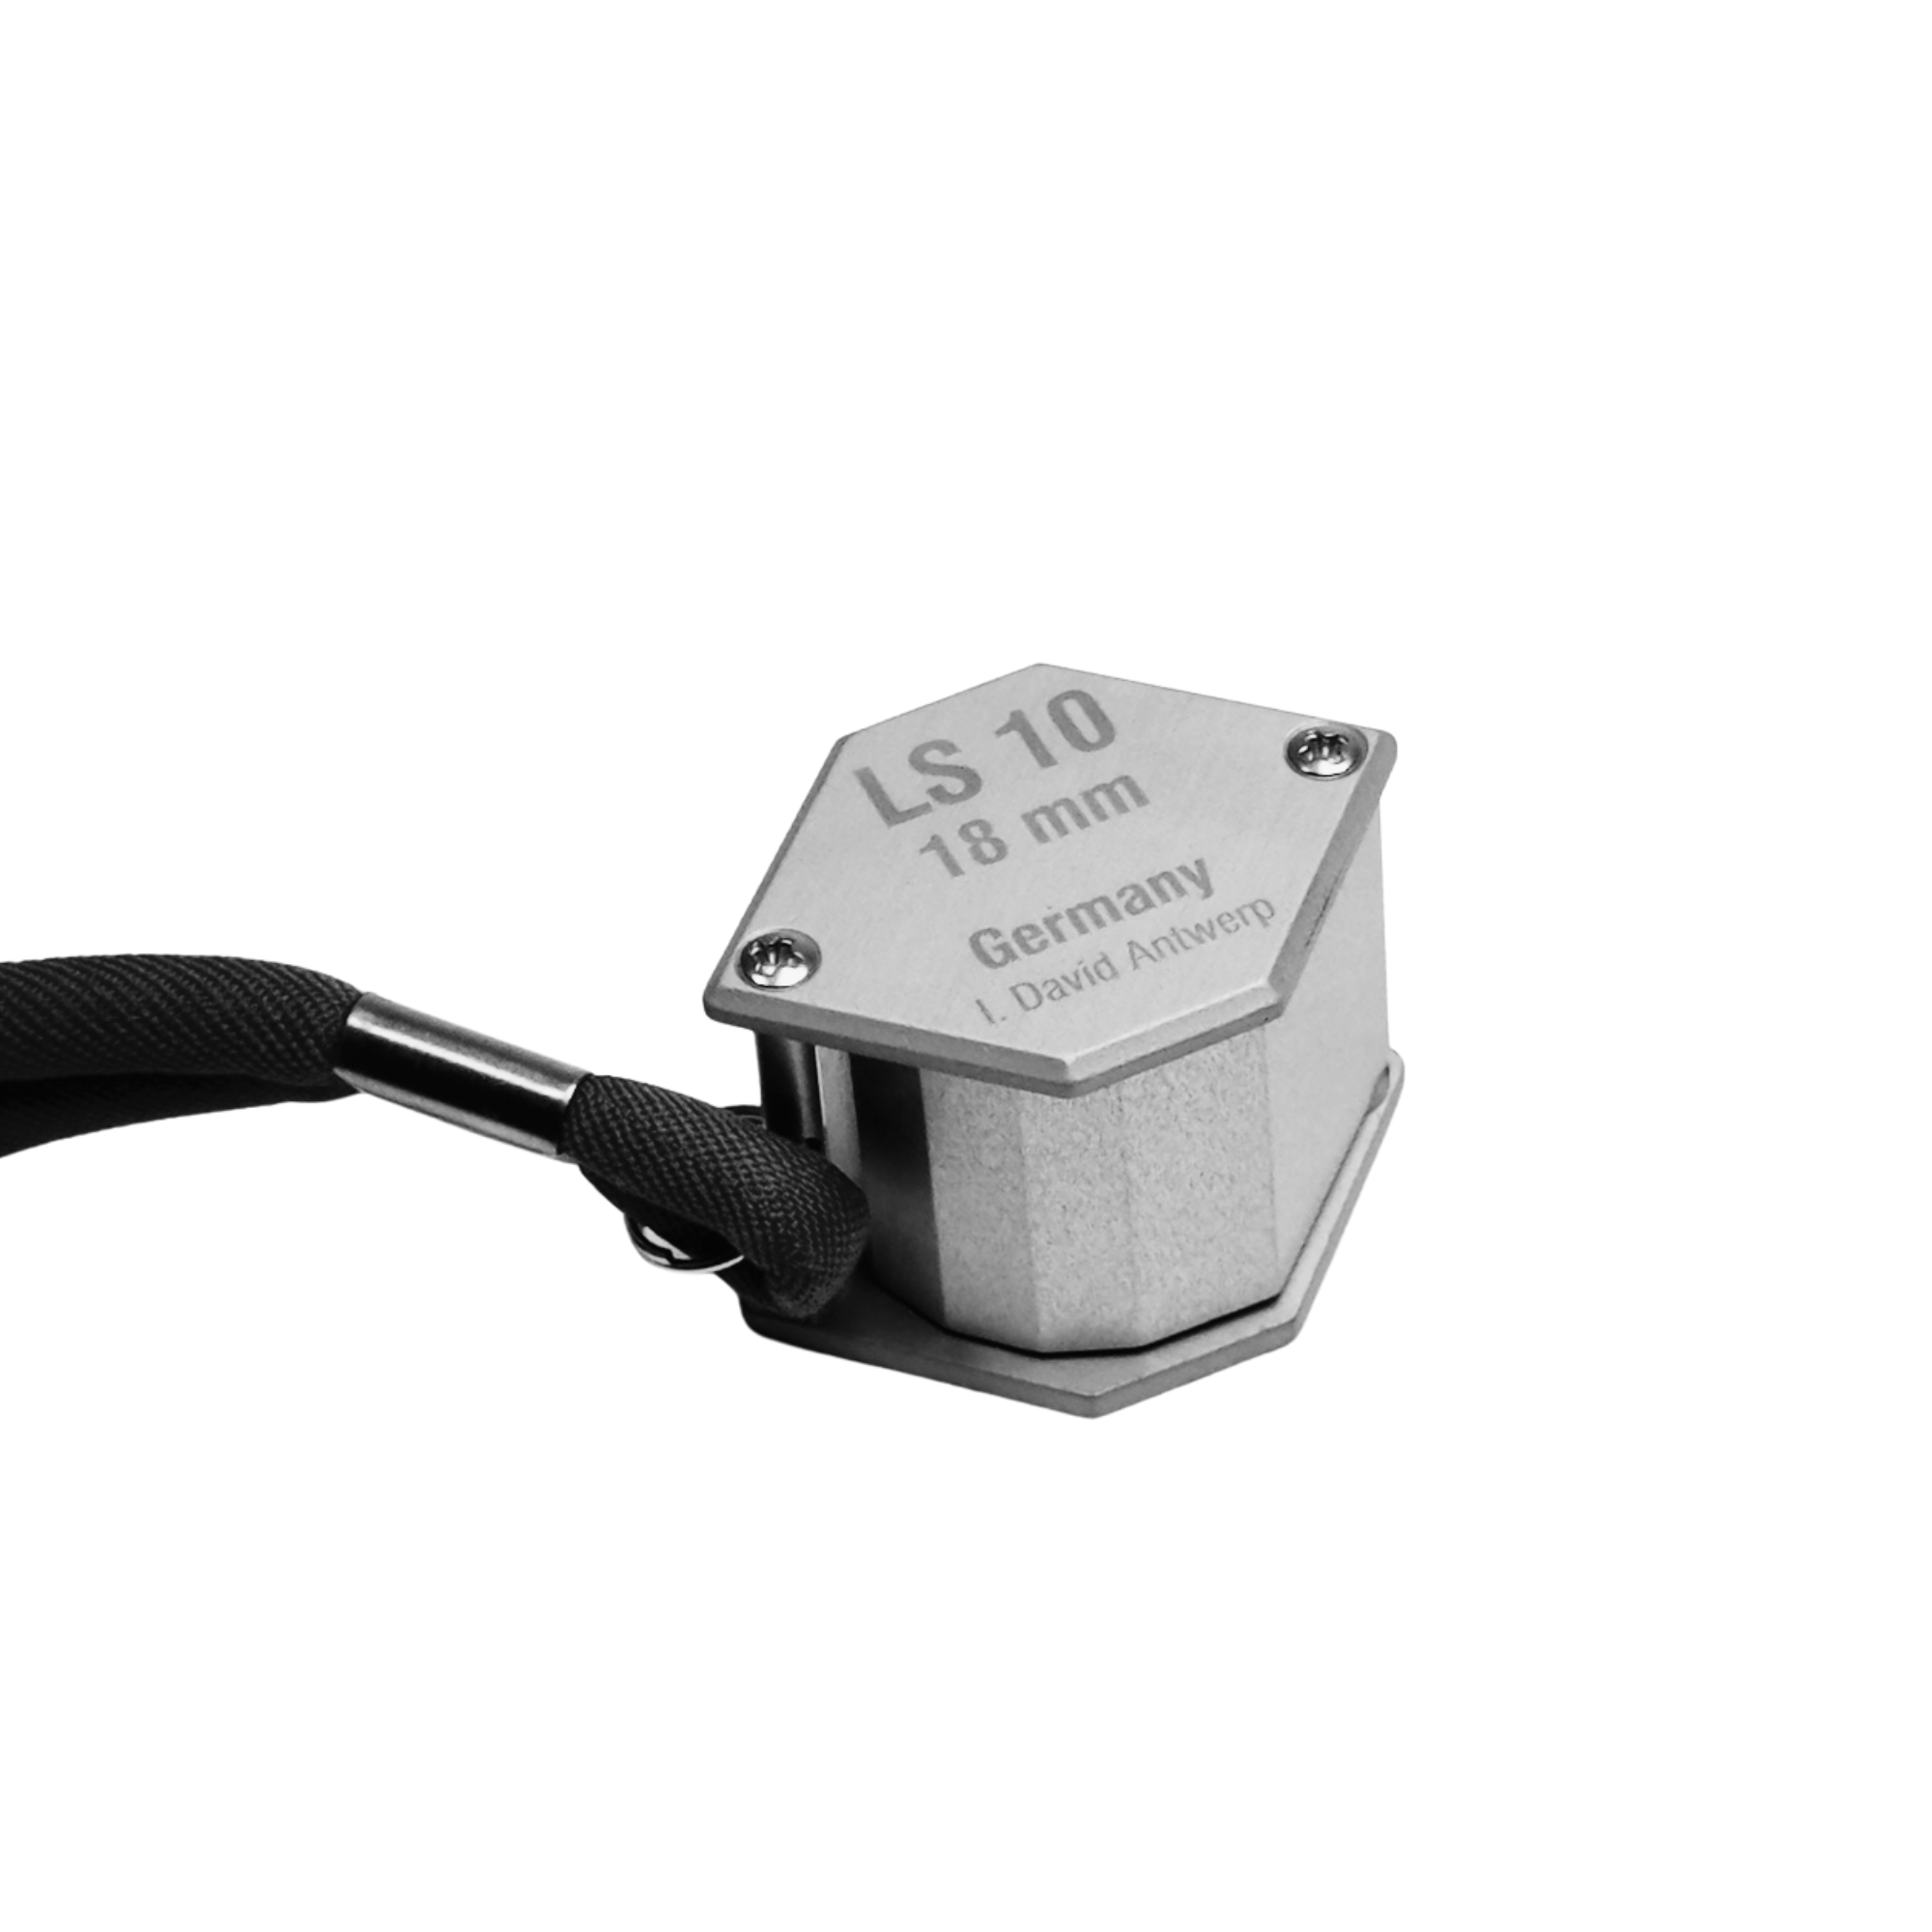 HARALD Schneider Magnifier LS 10 - Magnificateur premium avec un grossissement 10X